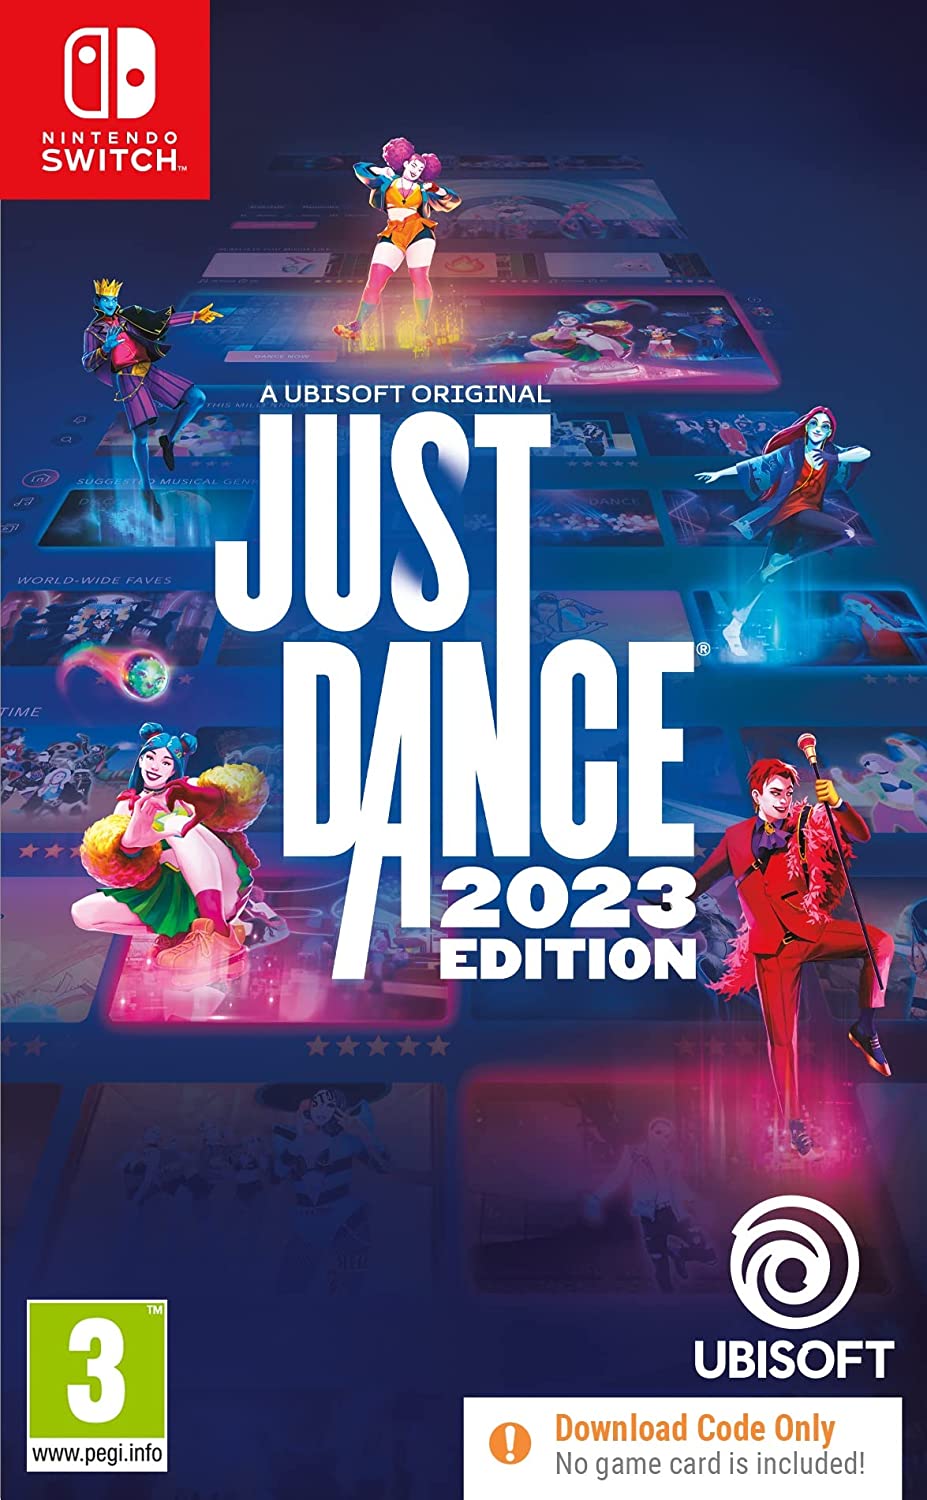 Just Dance®, Aplicações de download da Nintendo Switch, Jogos